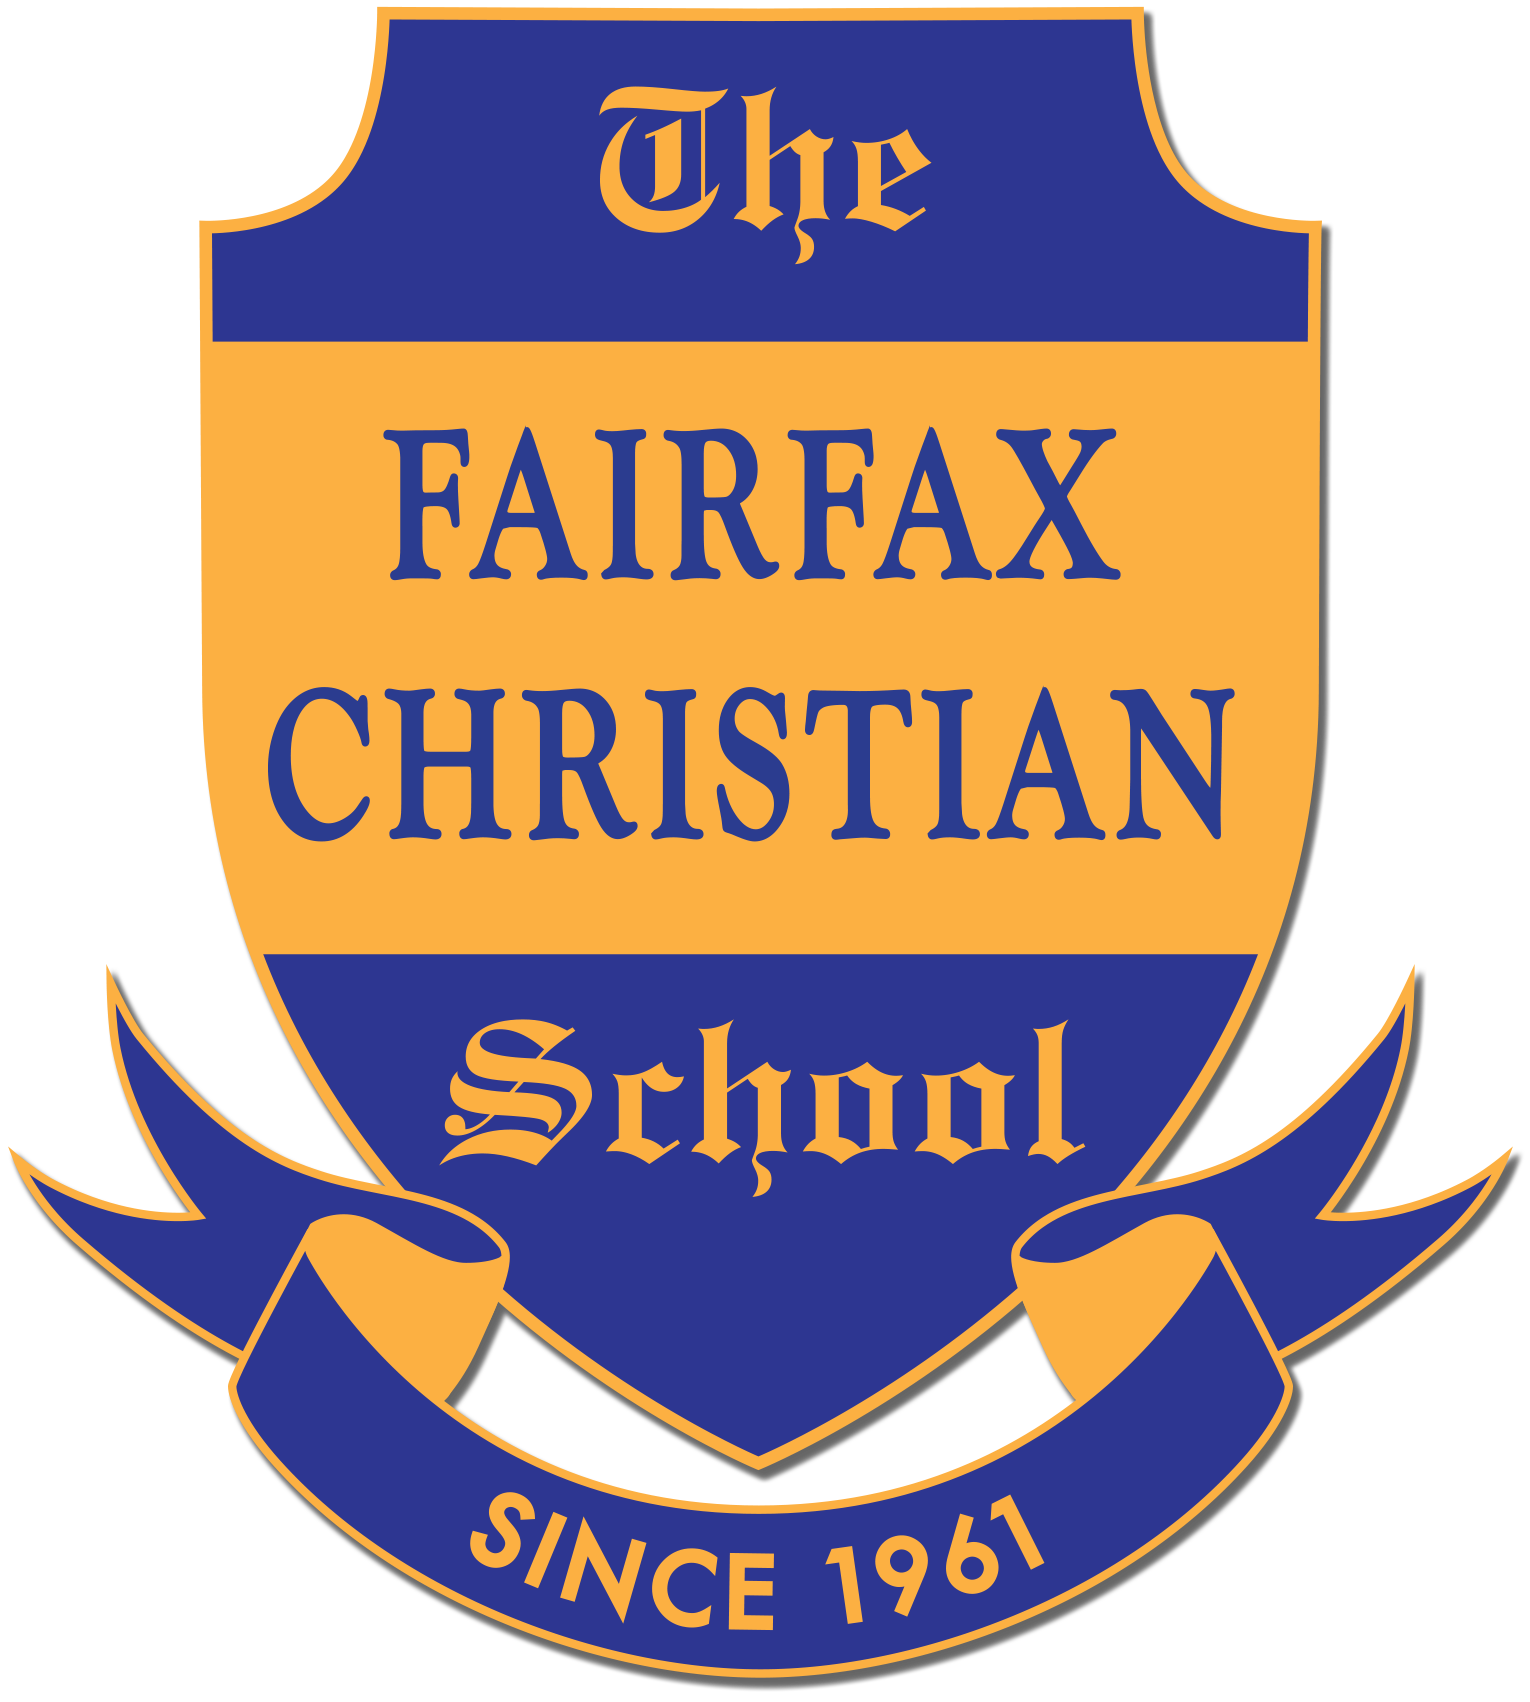 Christian Private School Near Me | Private School in Northern VA | Fairfax Christian School